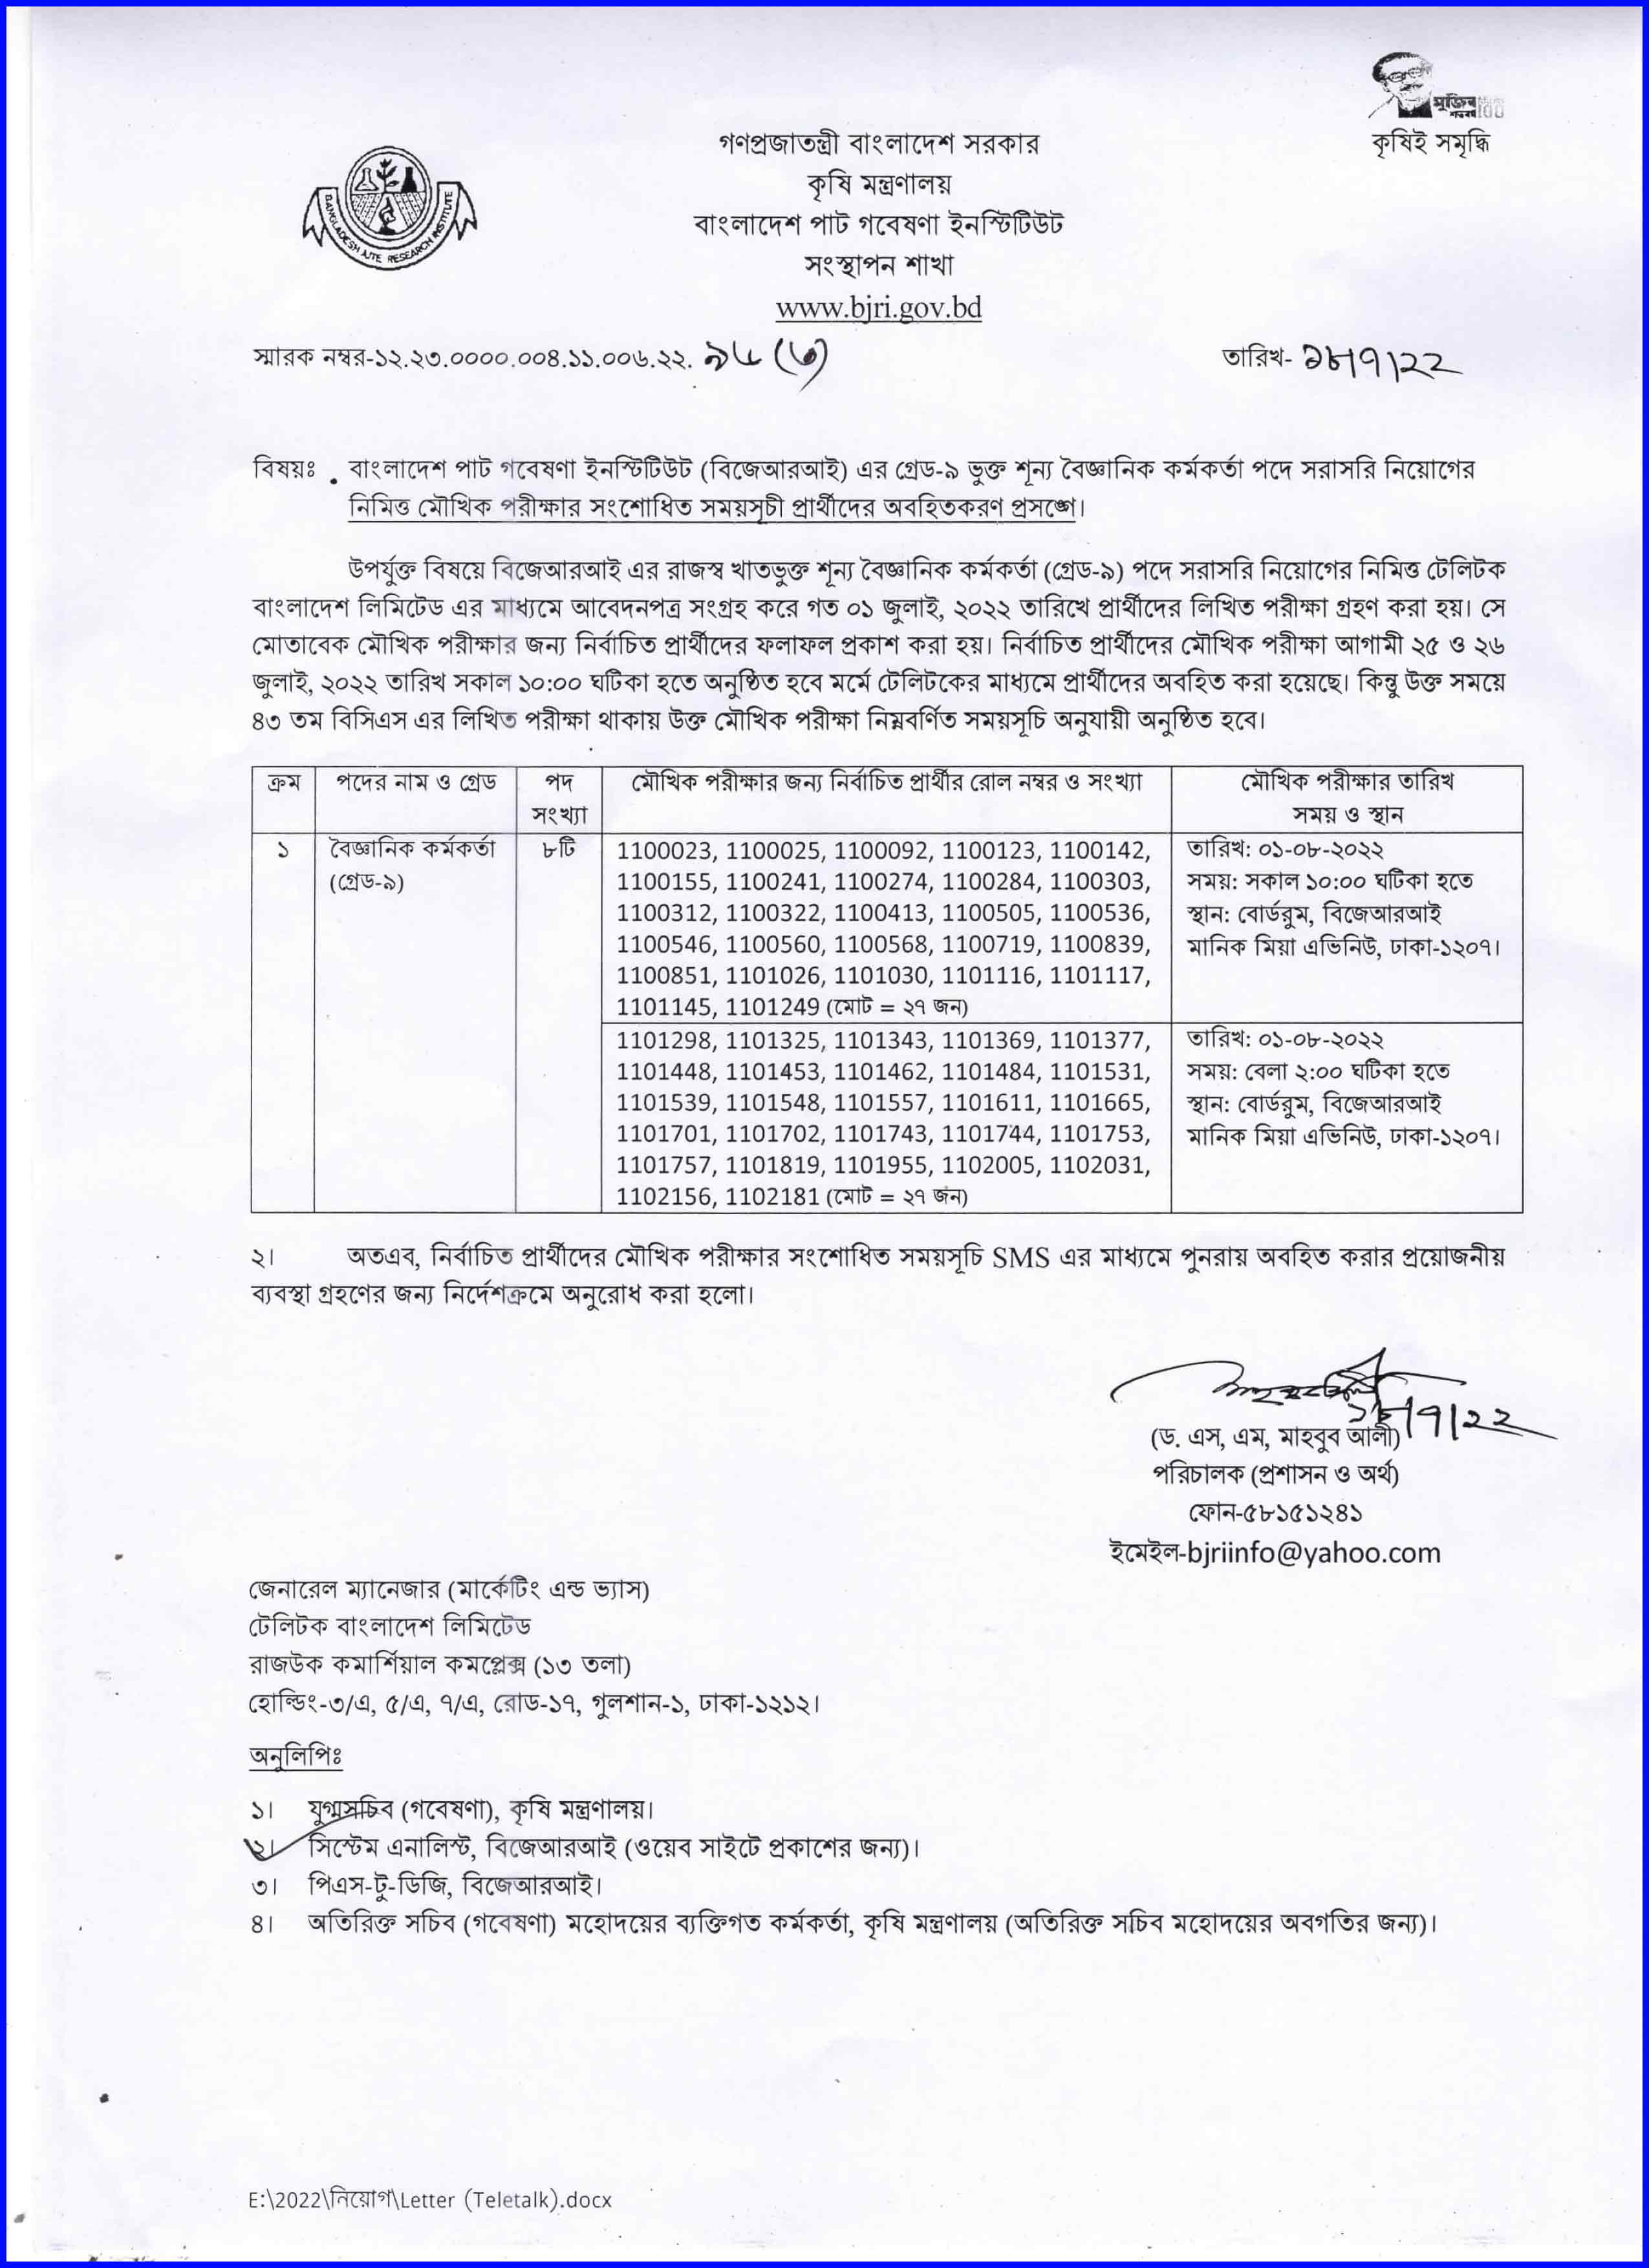 বাংলাদেশ পাট গবেষণা ইনস্টিটিউট এর সংশোধিত মৌখিক পরীক্ষার সময়সূচি । Bangladesh Jute Research Institute Revised Oral Exam Schedule